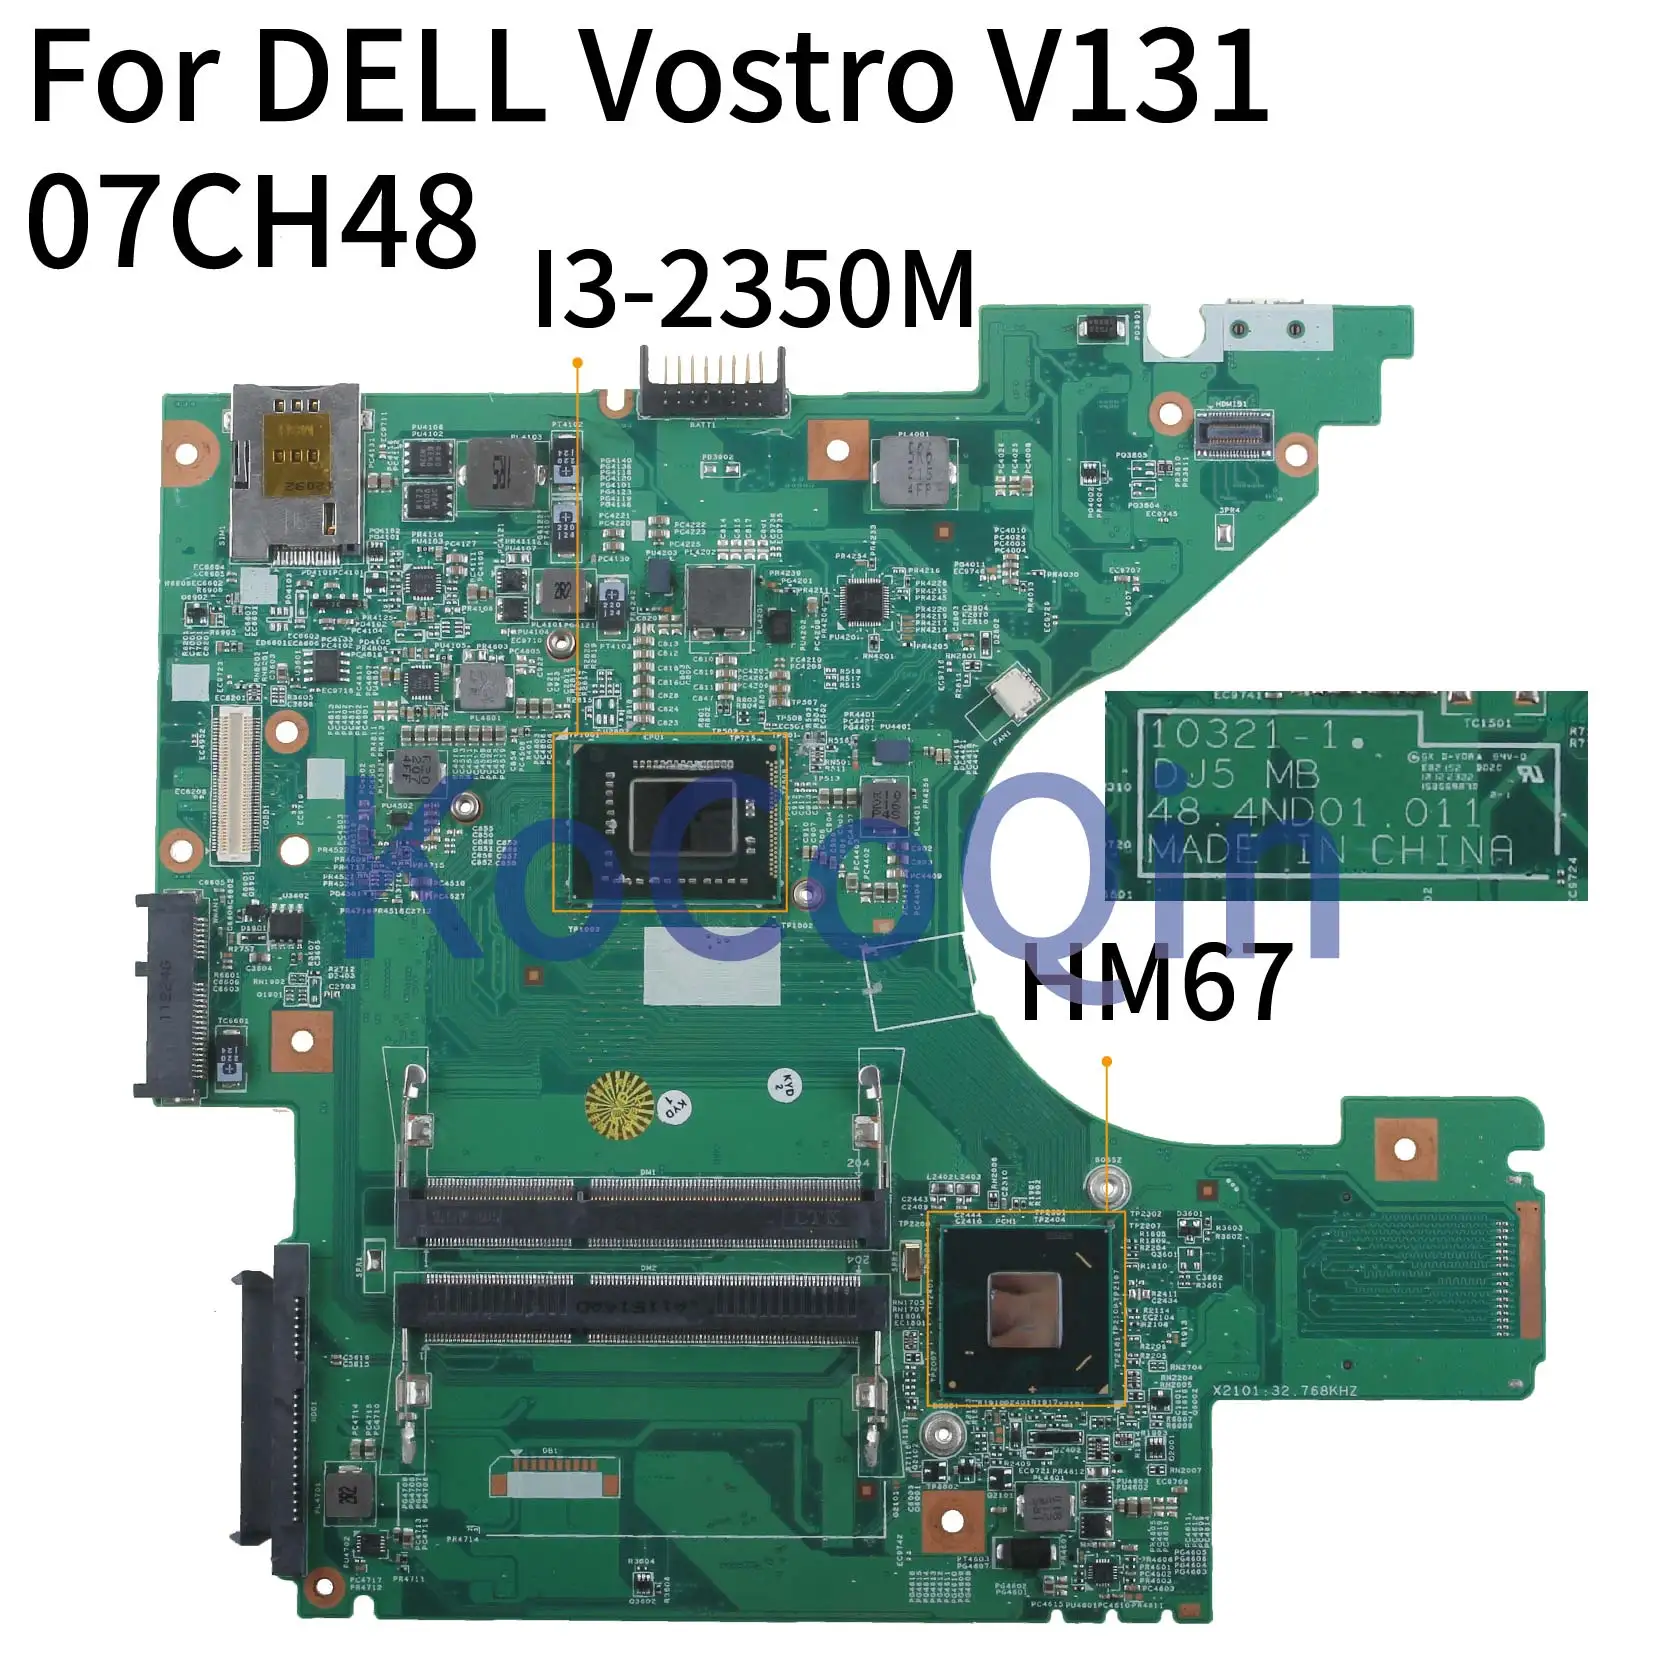 KoCoQin ноутбук материнская плата для Dell Vostro 131 V131 I3-2350M материнская плата CN-07CH48 07CH48 10321-1 48.4ND01.011 HM67